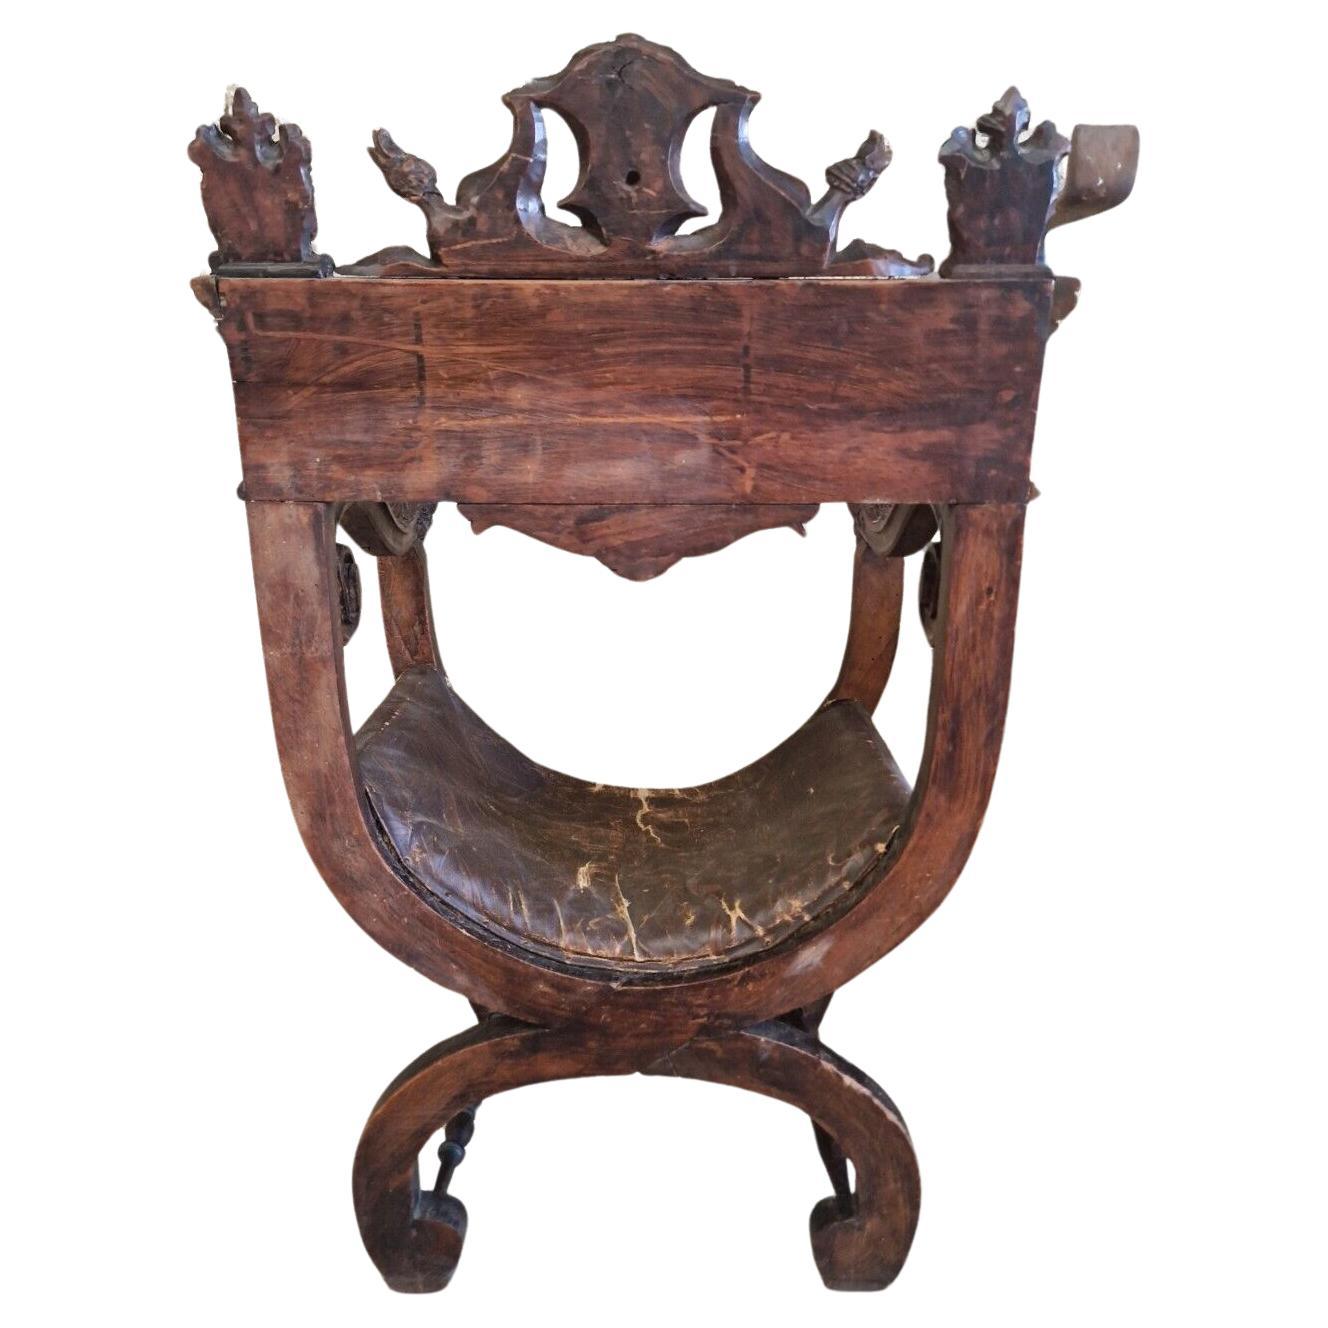 Fabuleux fauteuil Dagobert français de style Renaissance 

Bois sculpté à la main représentant des créatures mythiques, datant du début des années 1800.

Condition originale non restaurée, le cuir du siège est usé et décollé. Cette maison a beaucoup